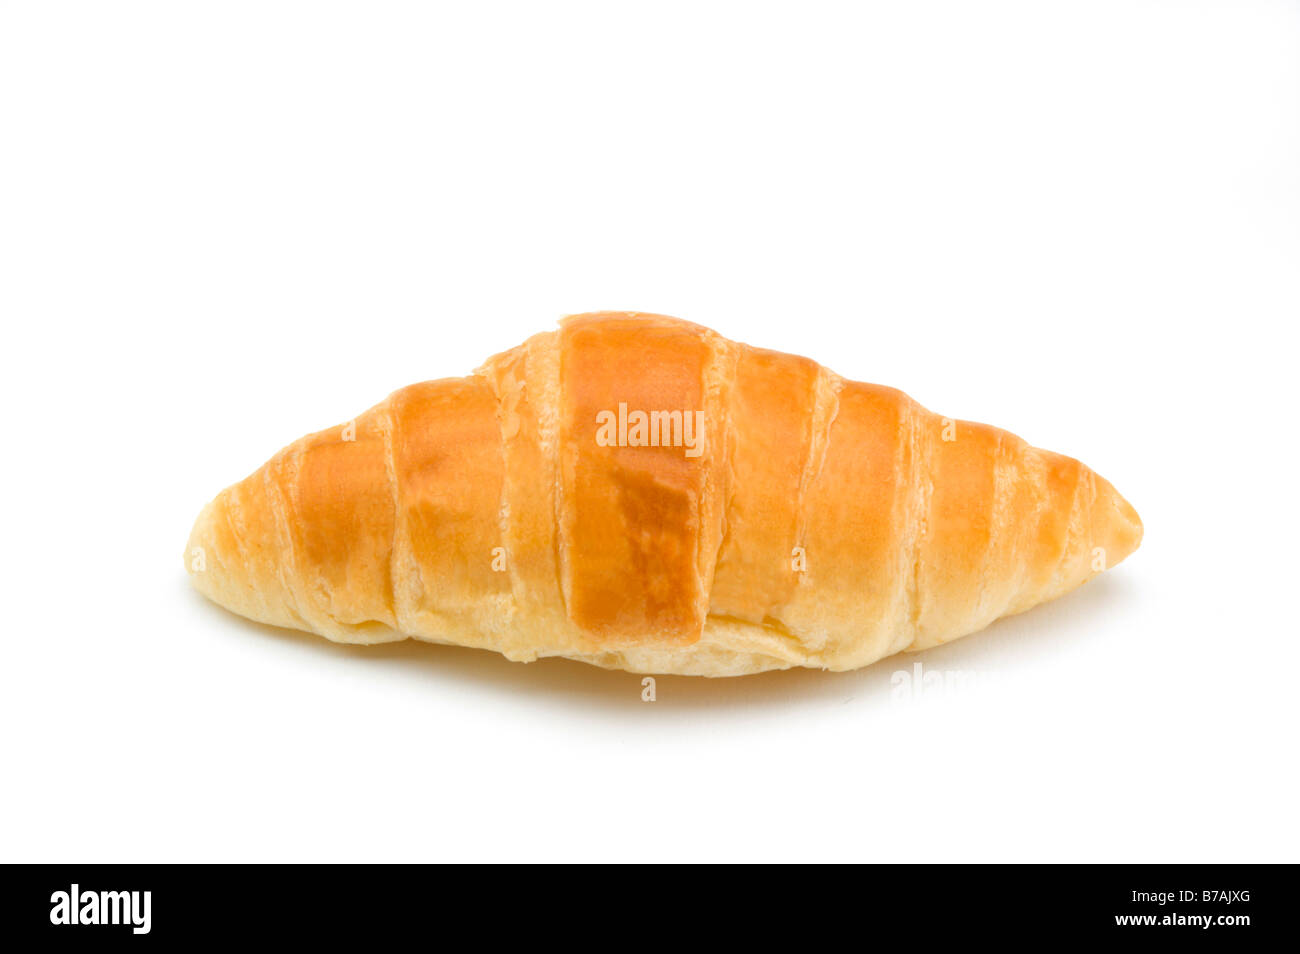 Croissant on white Stock Photo